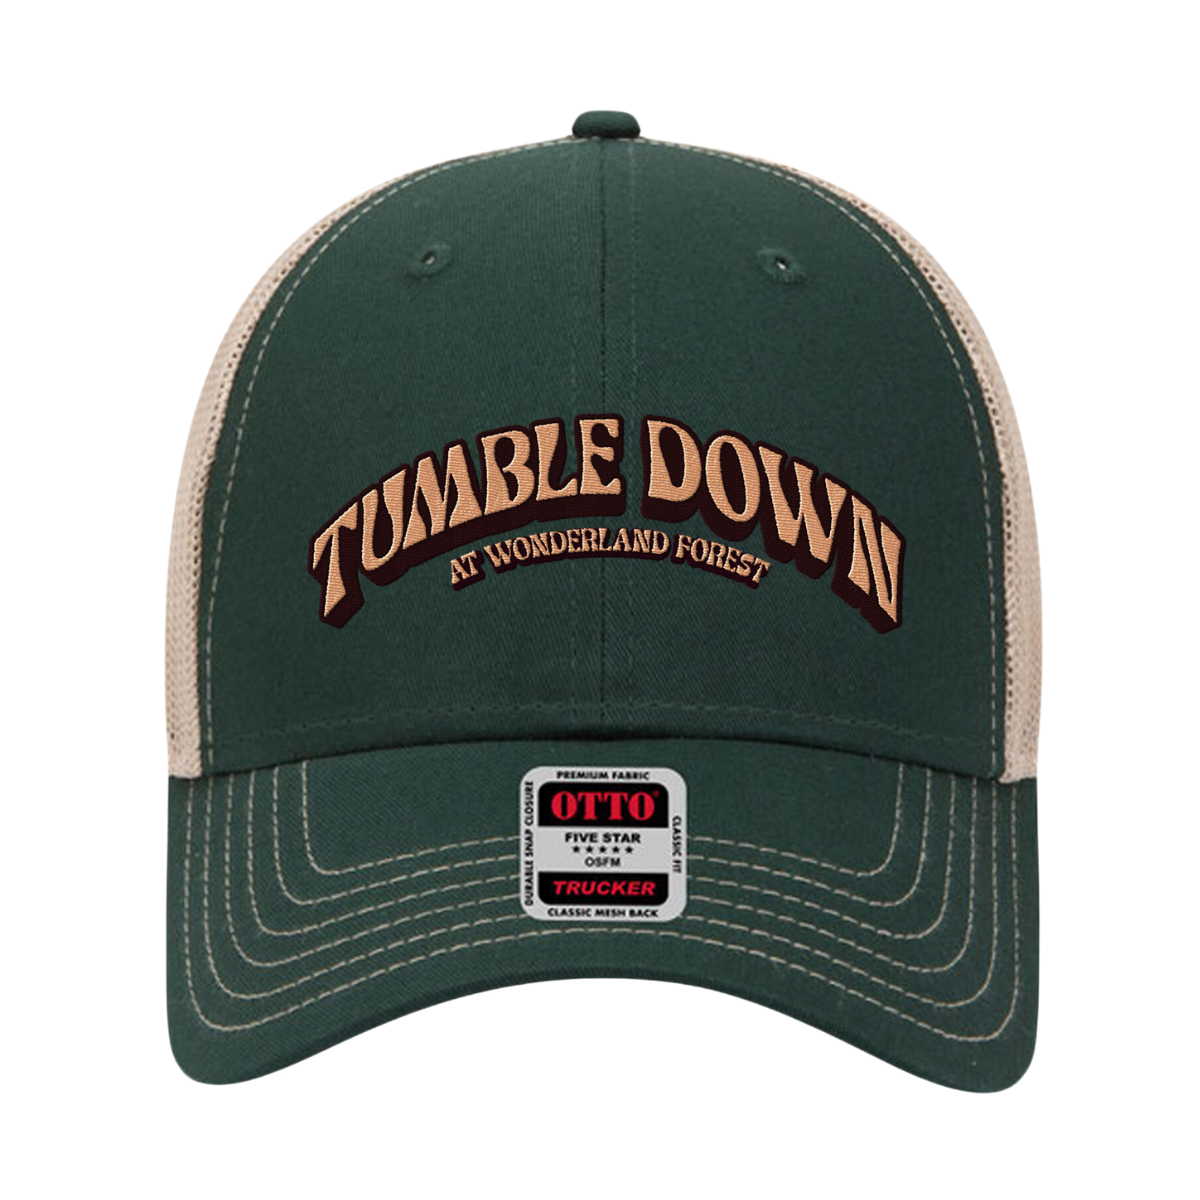 Tumble Down Hat